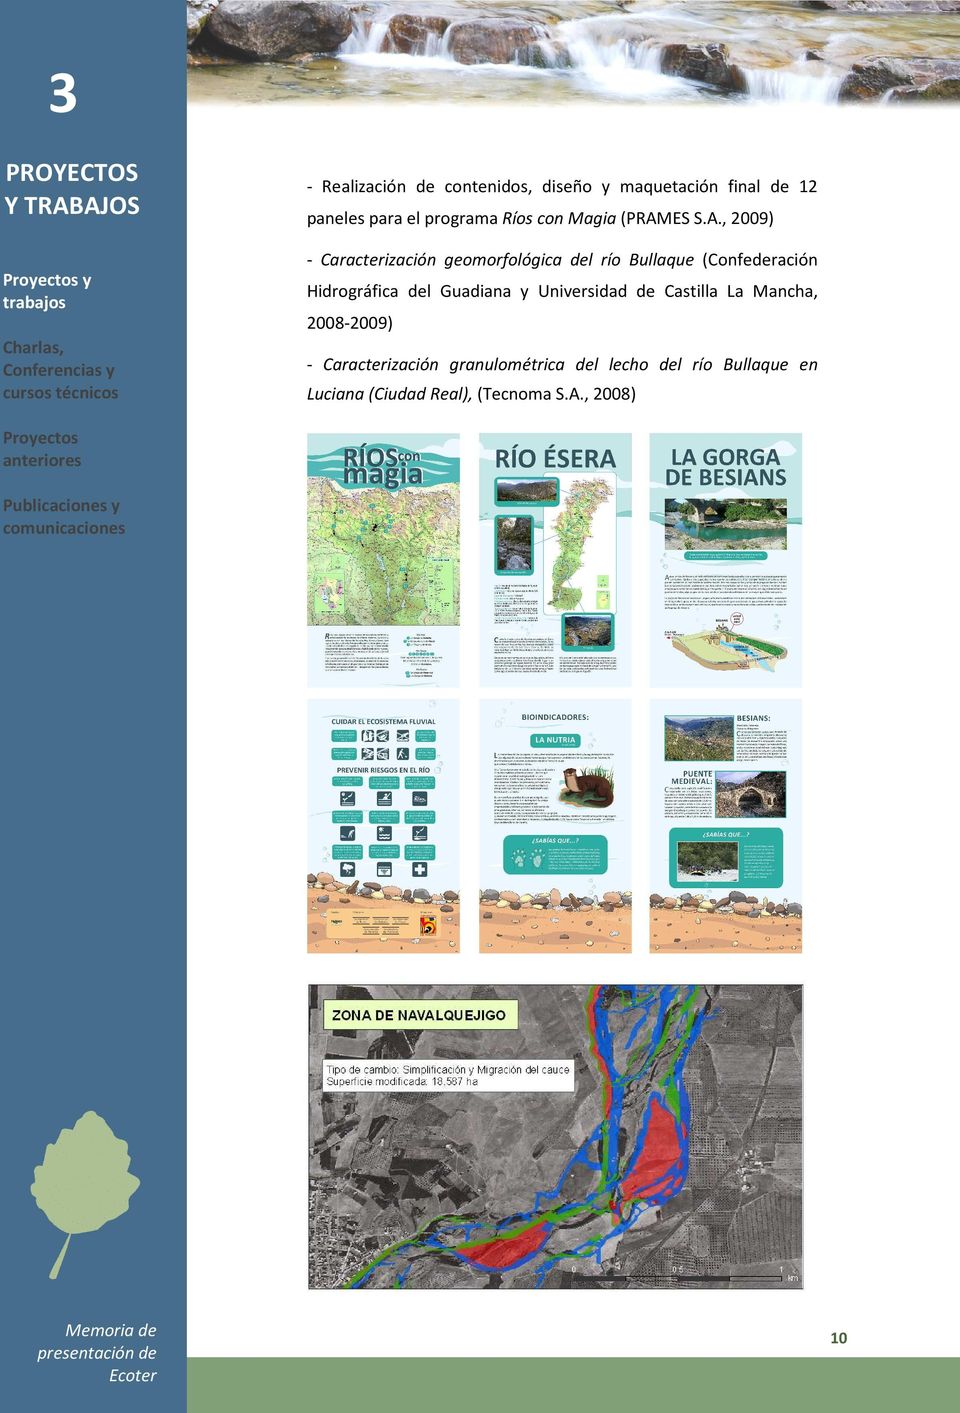 Guadiana y Universidad de Castilla La Mancha, 2008-2009) Charlas, Conferencias y cursos técnicos - Caracterización